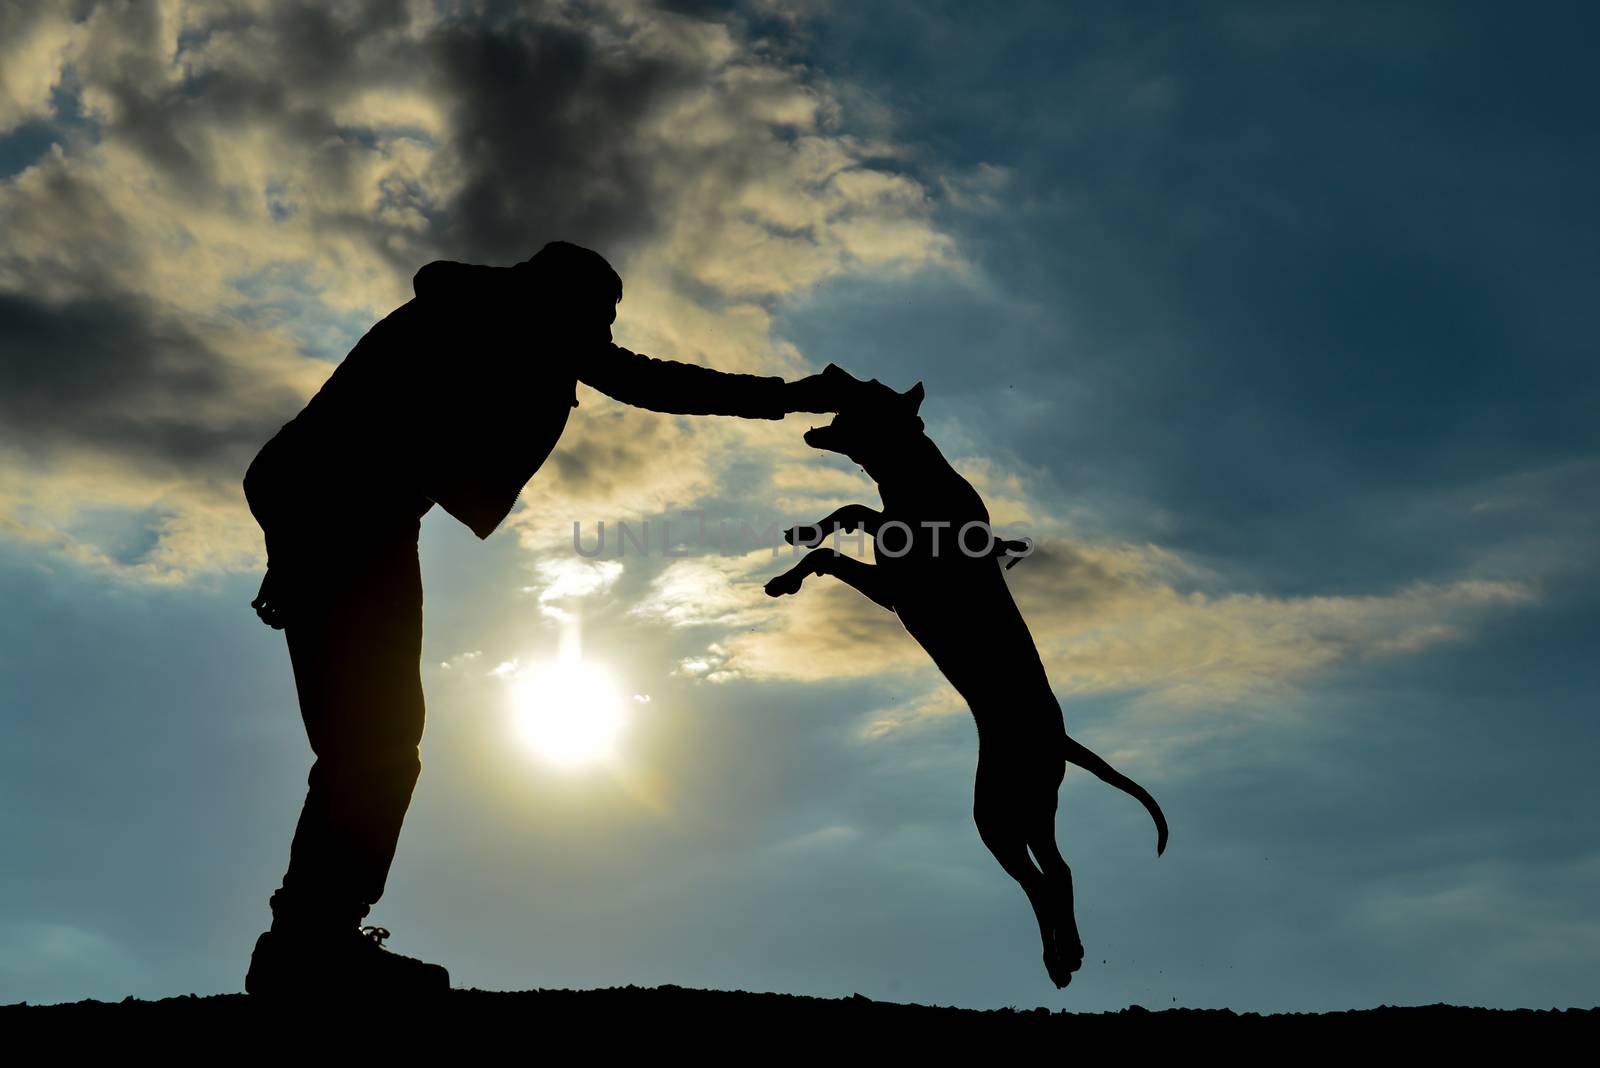 pitbull dog training concept